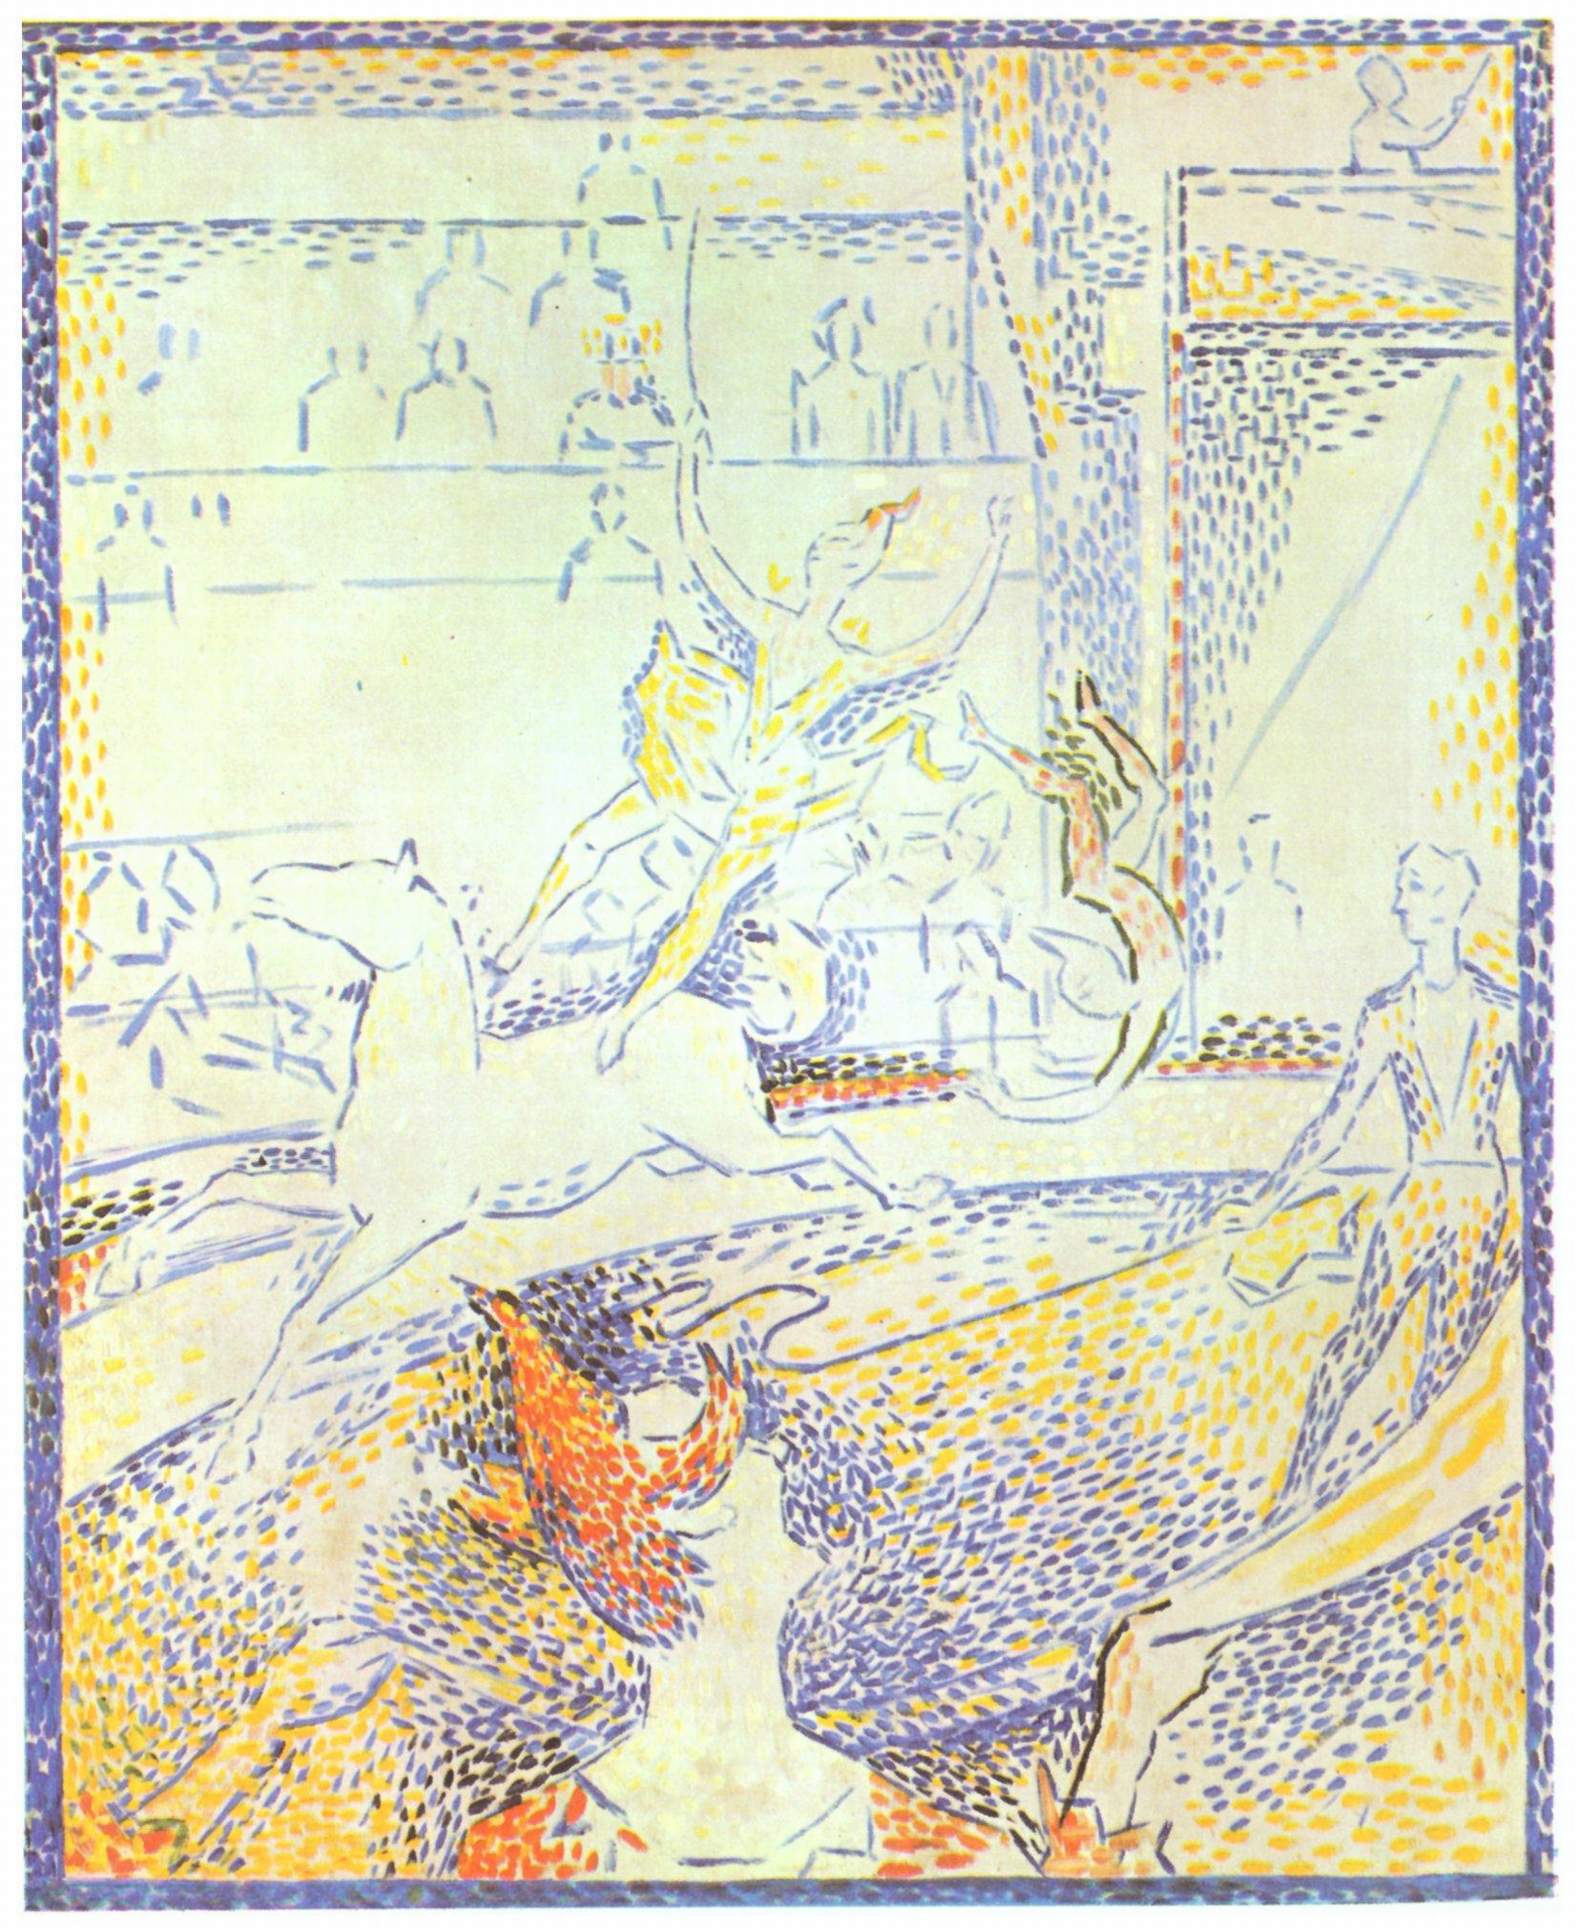 《关于马戏团的习作》乔治·修拉作品介绍及画作含义/创作背景